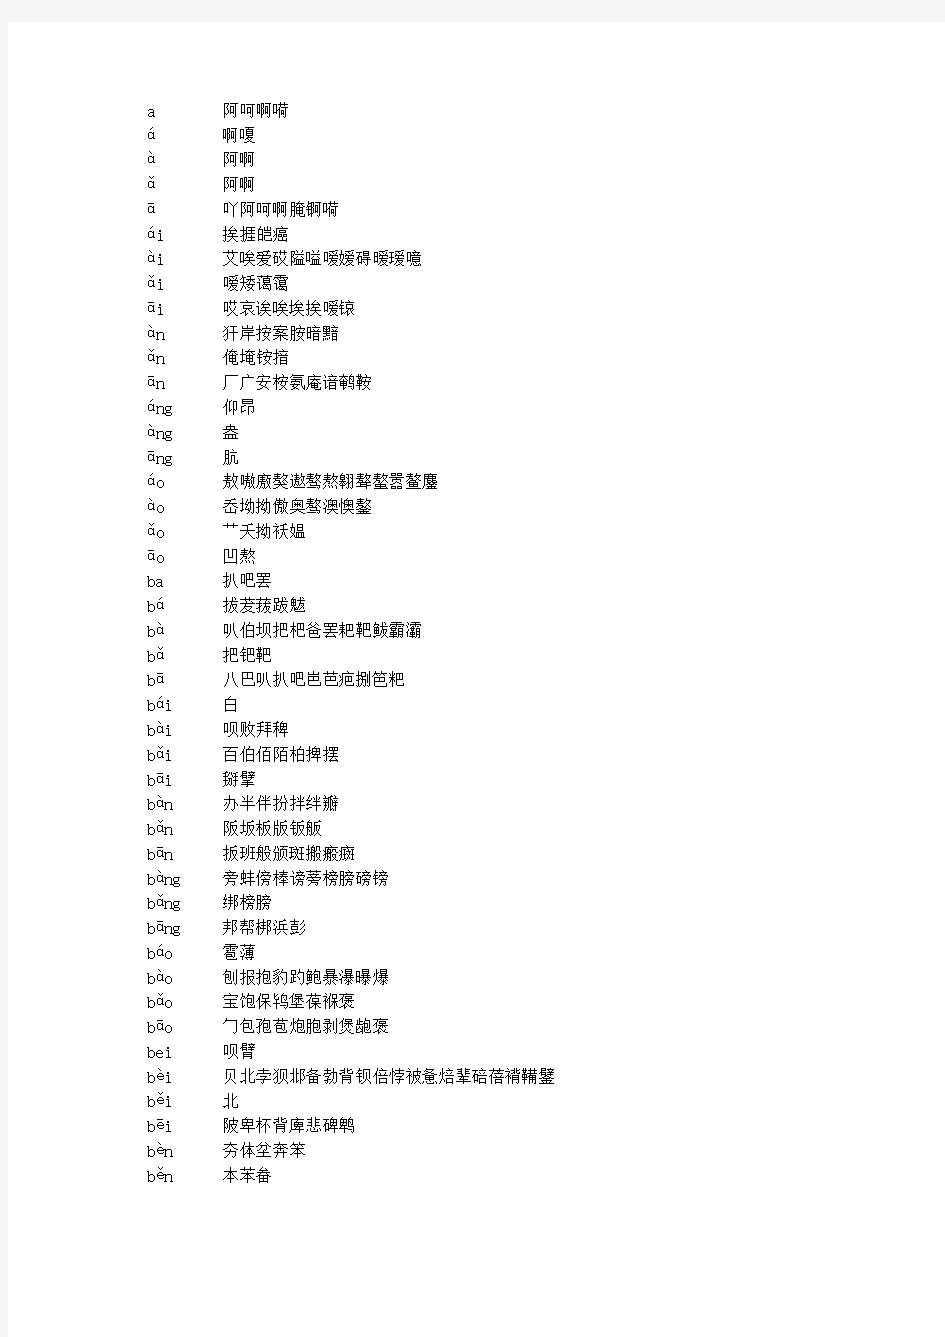 带声调的汉字汉语拼音对照(包括了GB2312的所有汉字)